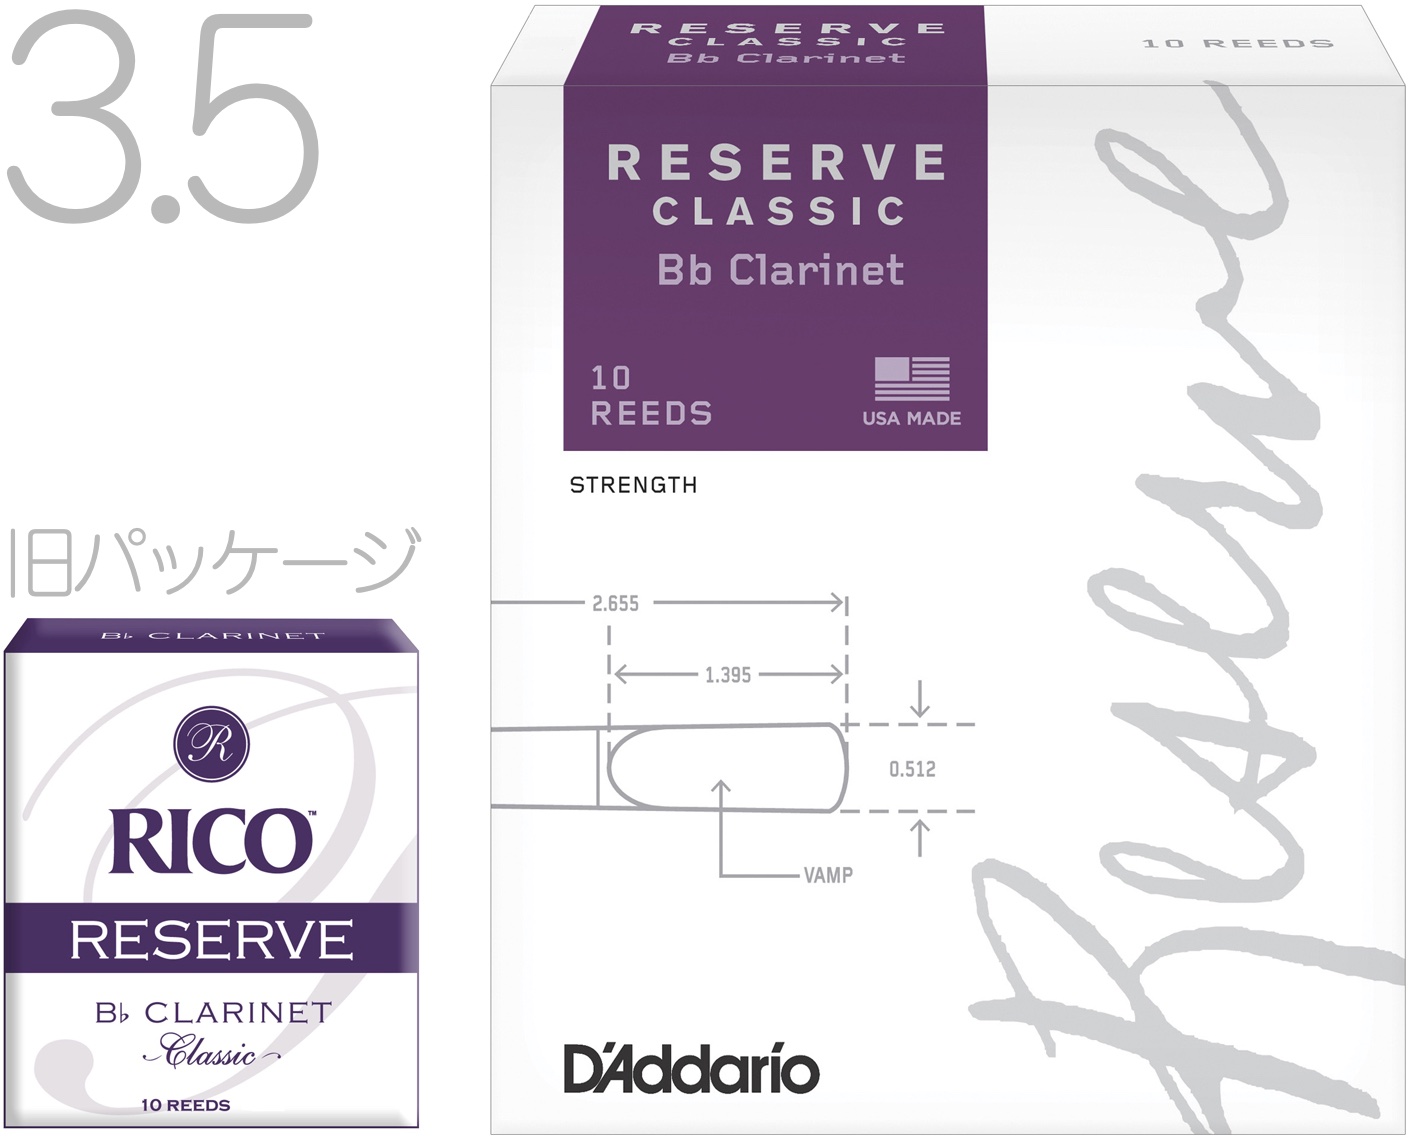  D'Addario Woodwinds ダダリオ ウッドウィンズ DCT1035 レゼルヴ クラシック B♭ クラリネット リード 3.5 10枚 LDADRECLC3.5 Bb clarinet Reserve classic 3-1 3半 